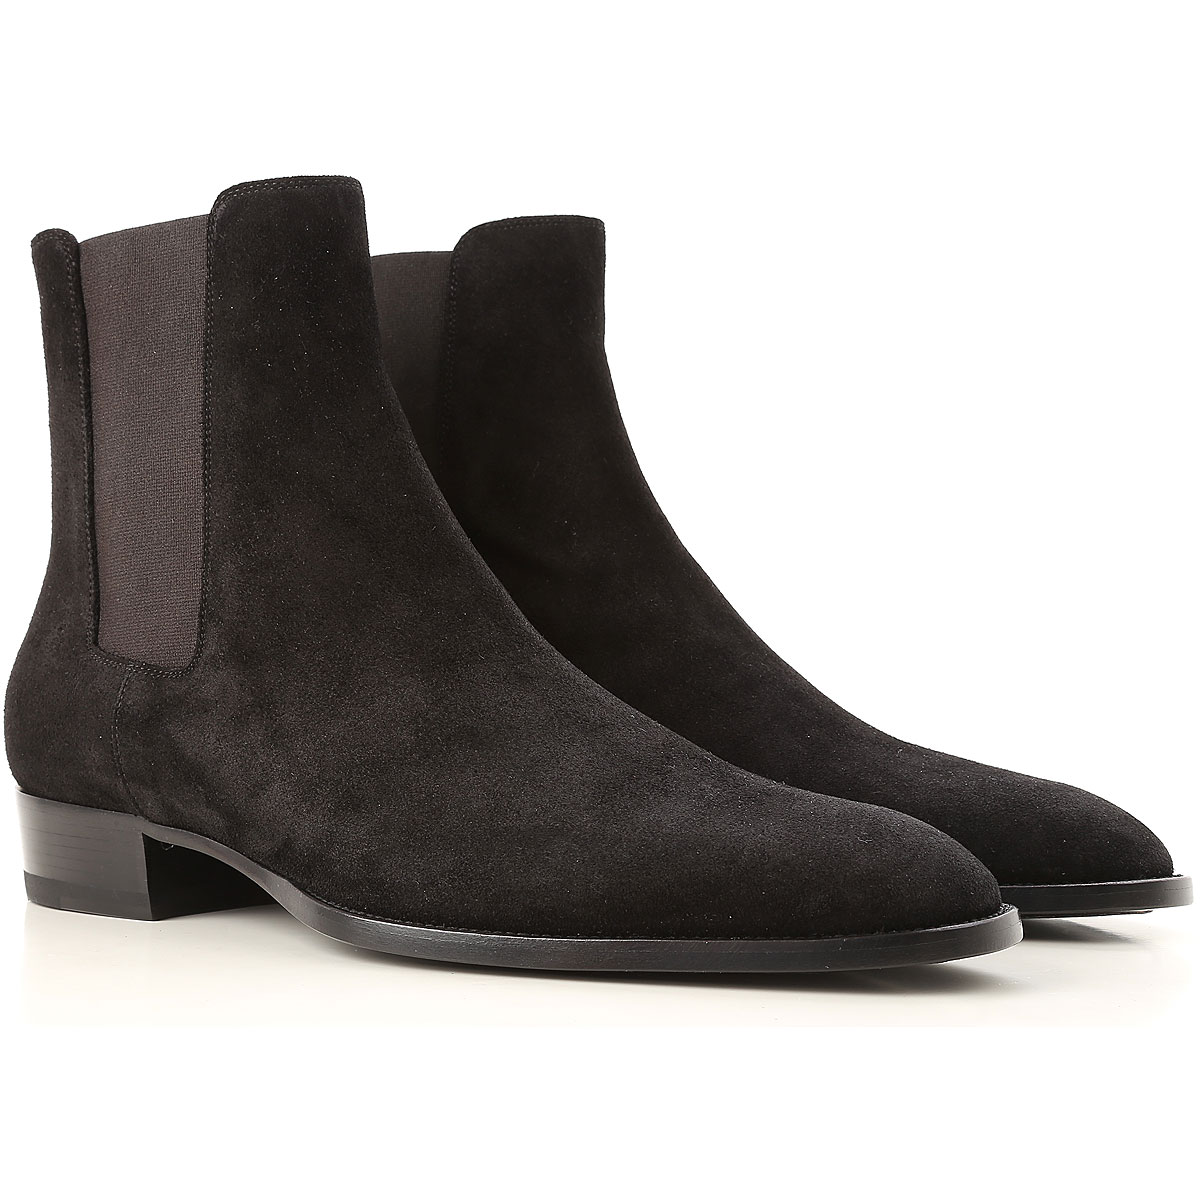 Mens Shoes Saint Laurent, Style code: 443208-bt300-1000